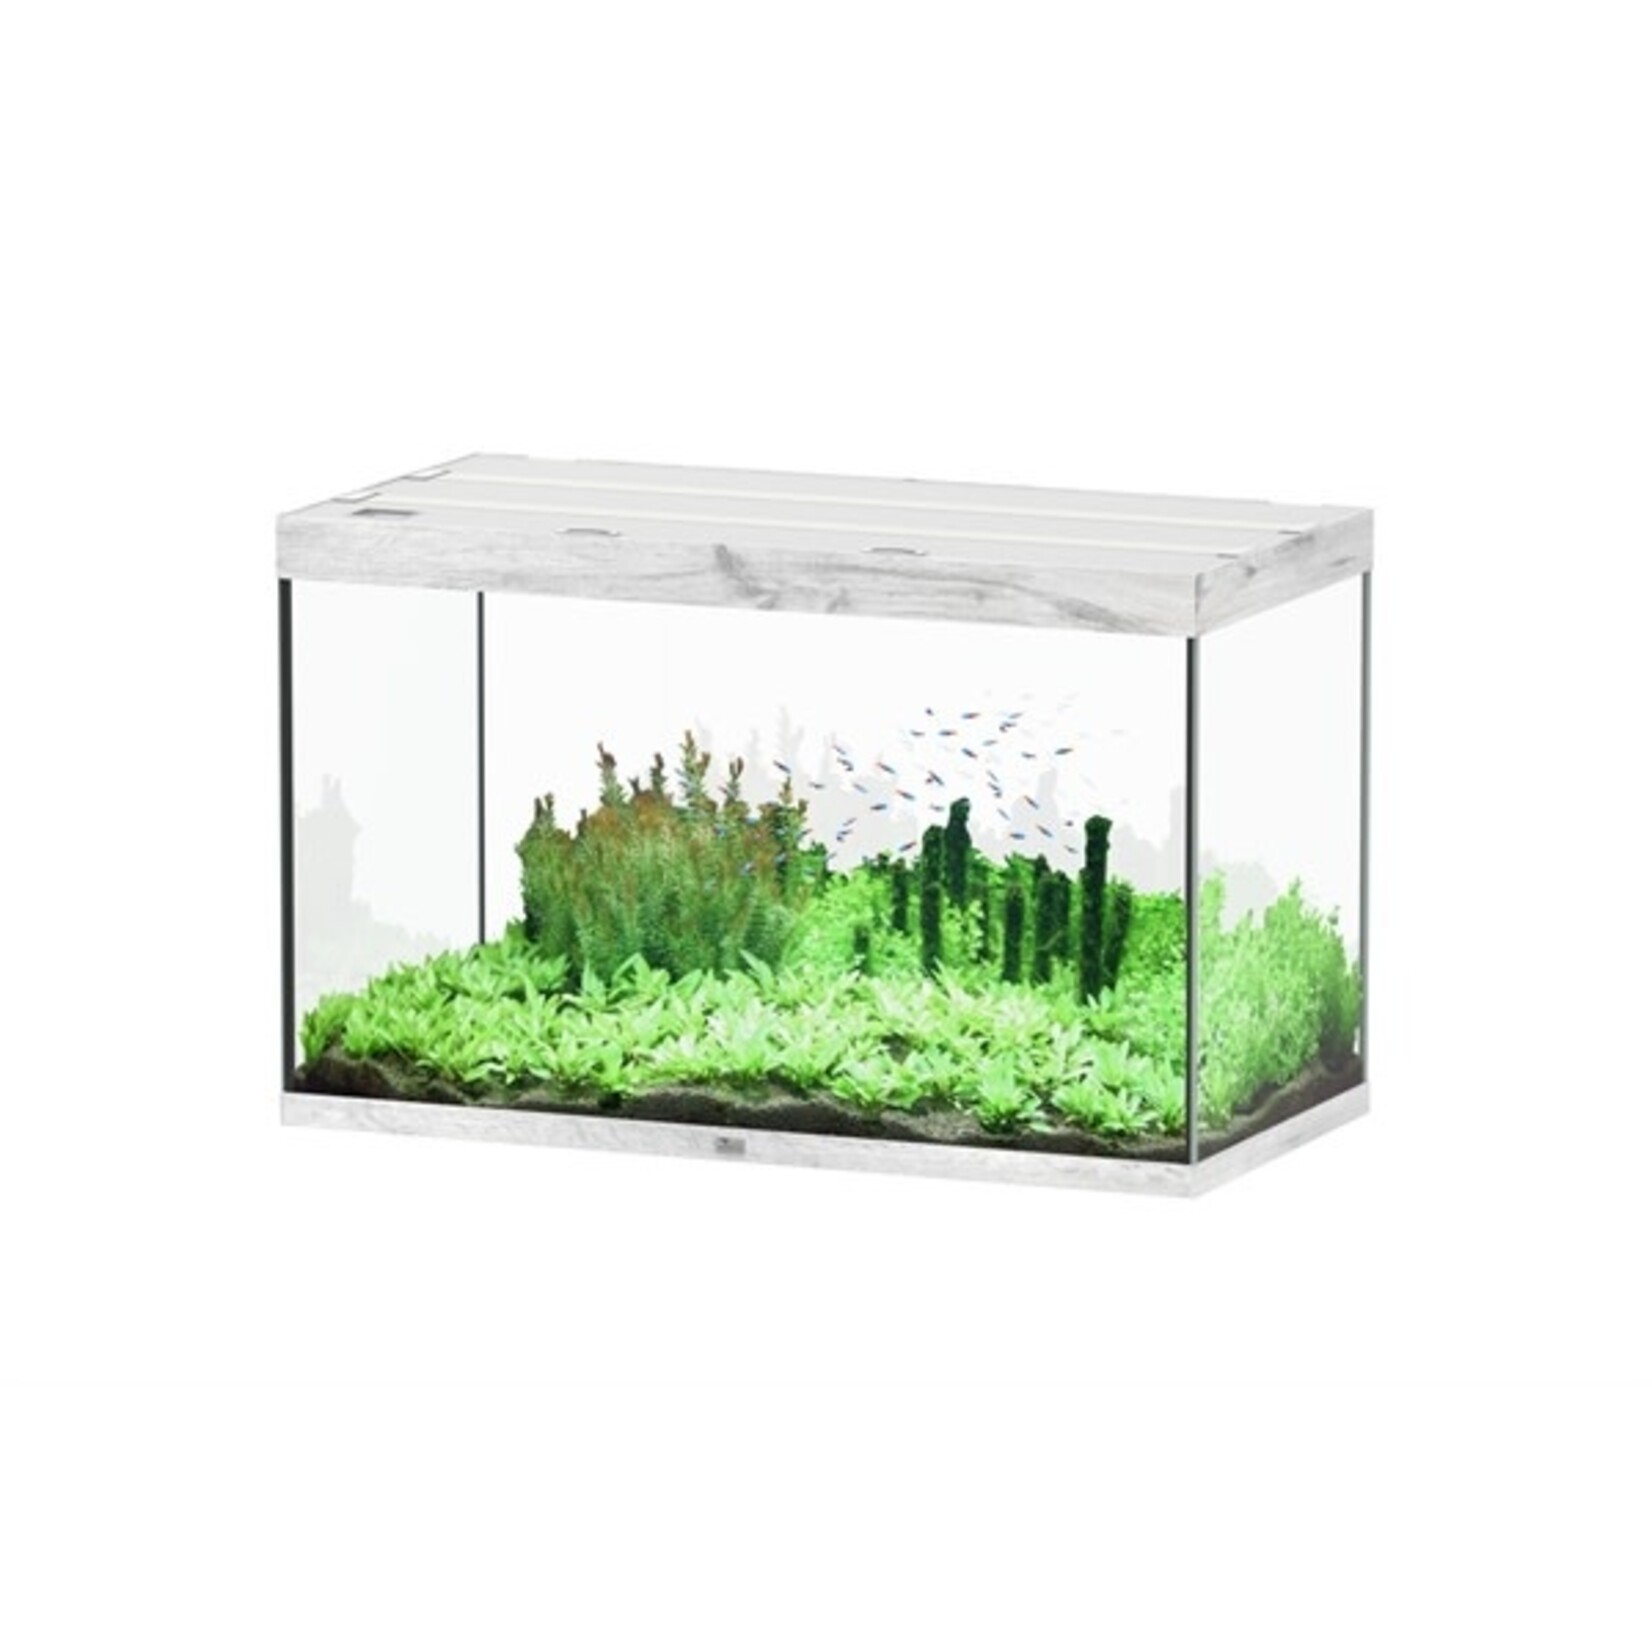 Aquatlantis Aquarium sublime 120x60 cm whitewash-088